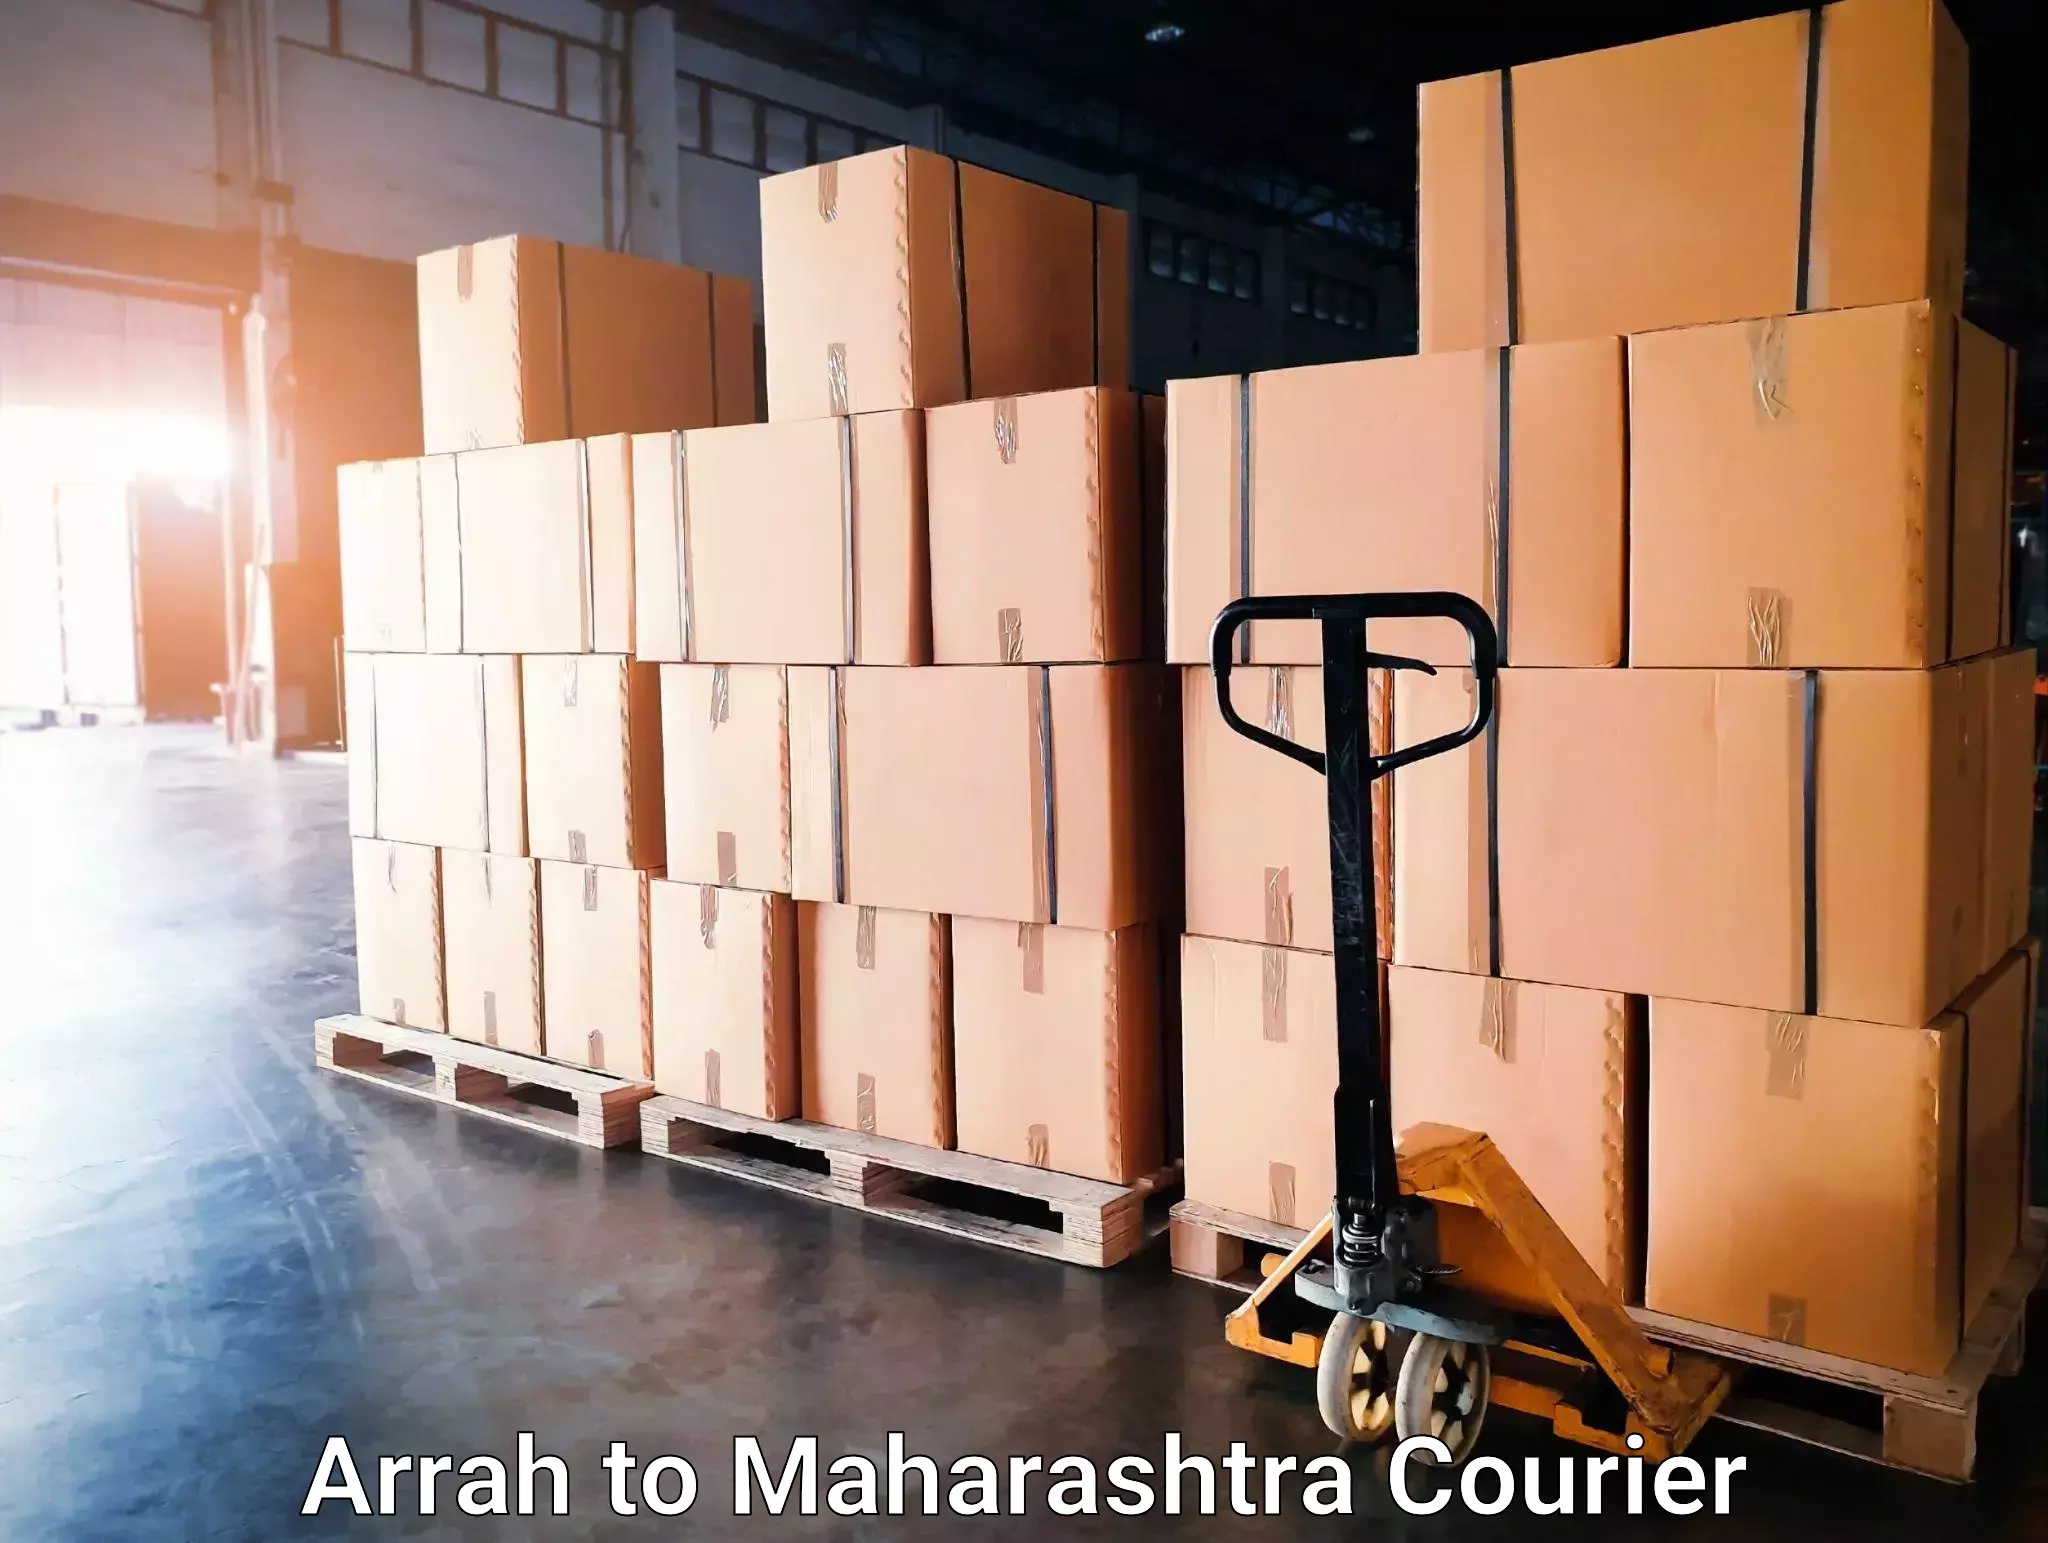 Trusted moving company Arrah to Maharashtra